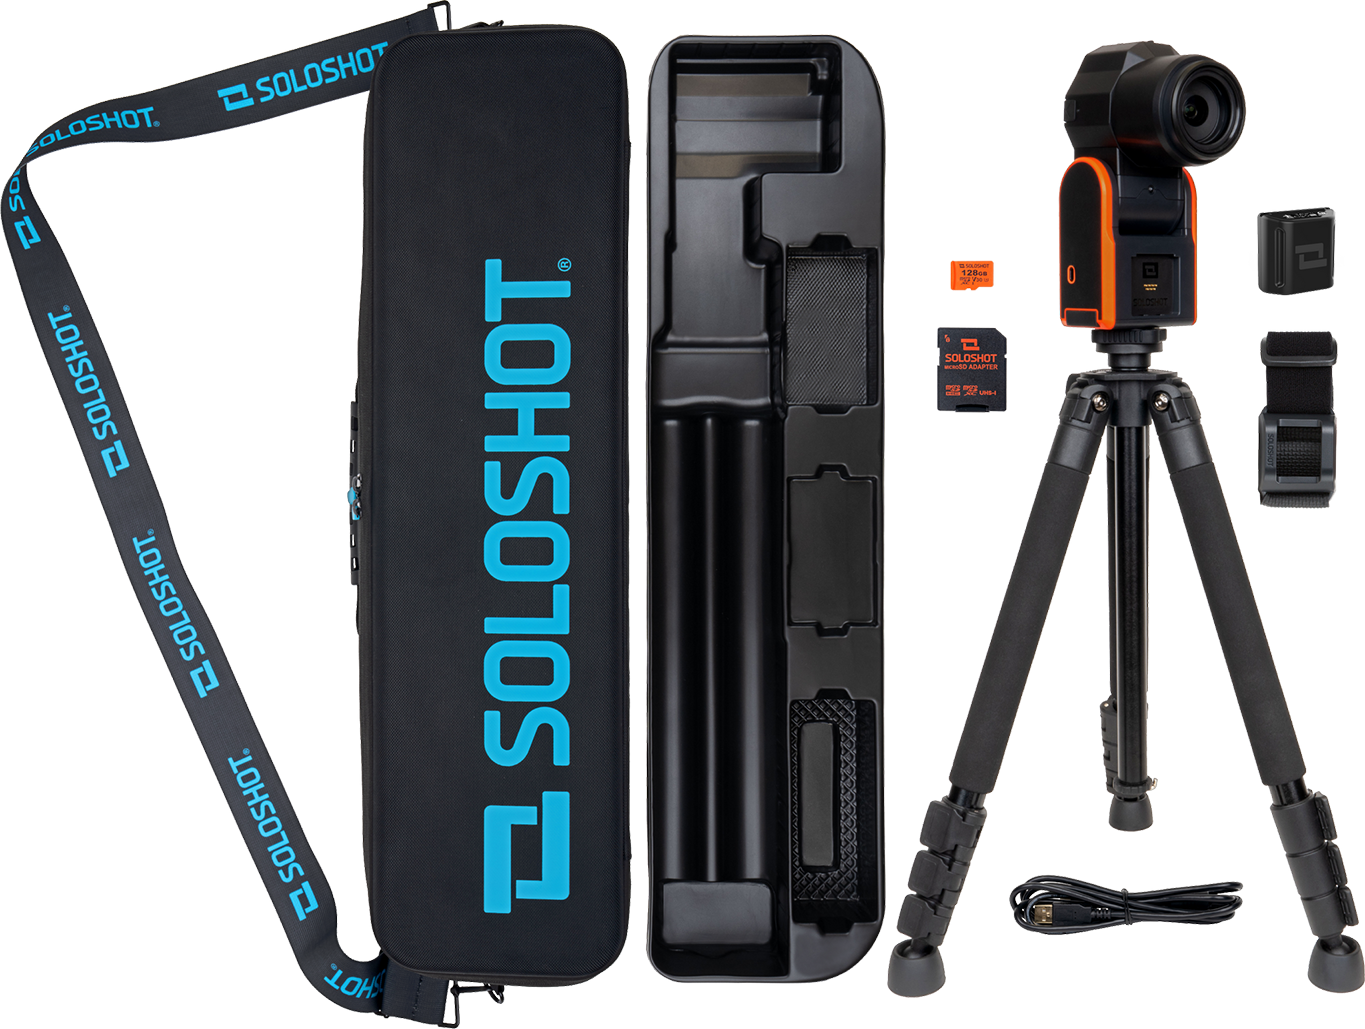 【国内正規品】SOLOSHOT3+ 自動追尾ロボットビデオカメラOptic65 光学65倍ズームカメラ付属キット